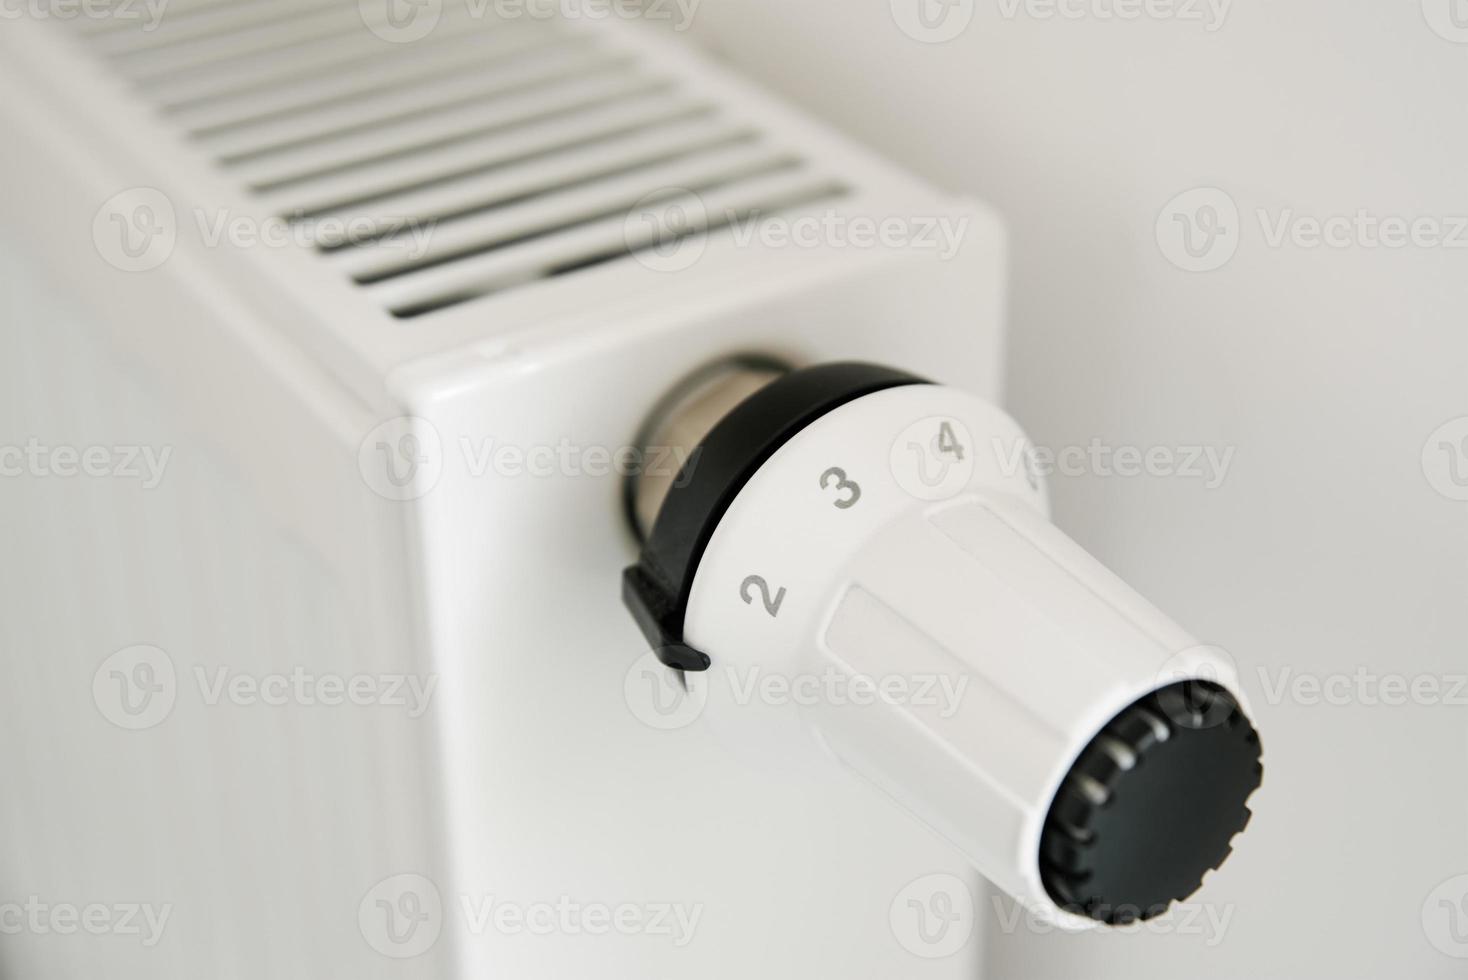 bouton de radiateur pour régler la température photo